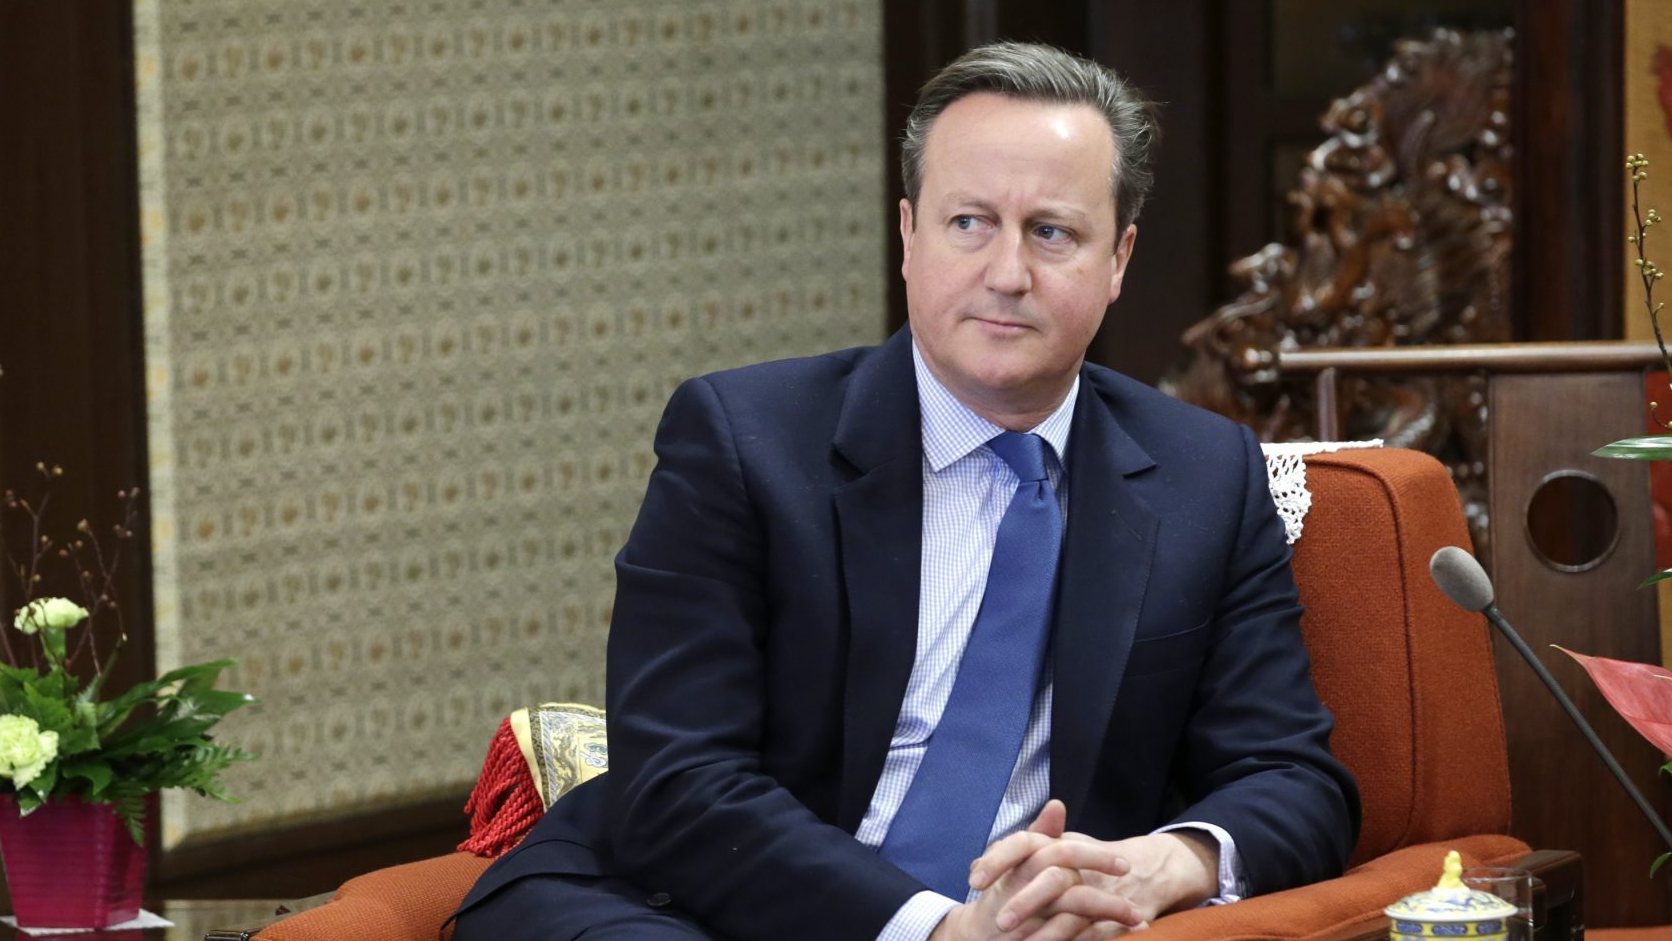 David Cameron demitiu-se das funções de primeiro-ministro depois do referendo de 2016 que deu origem ao Brexit